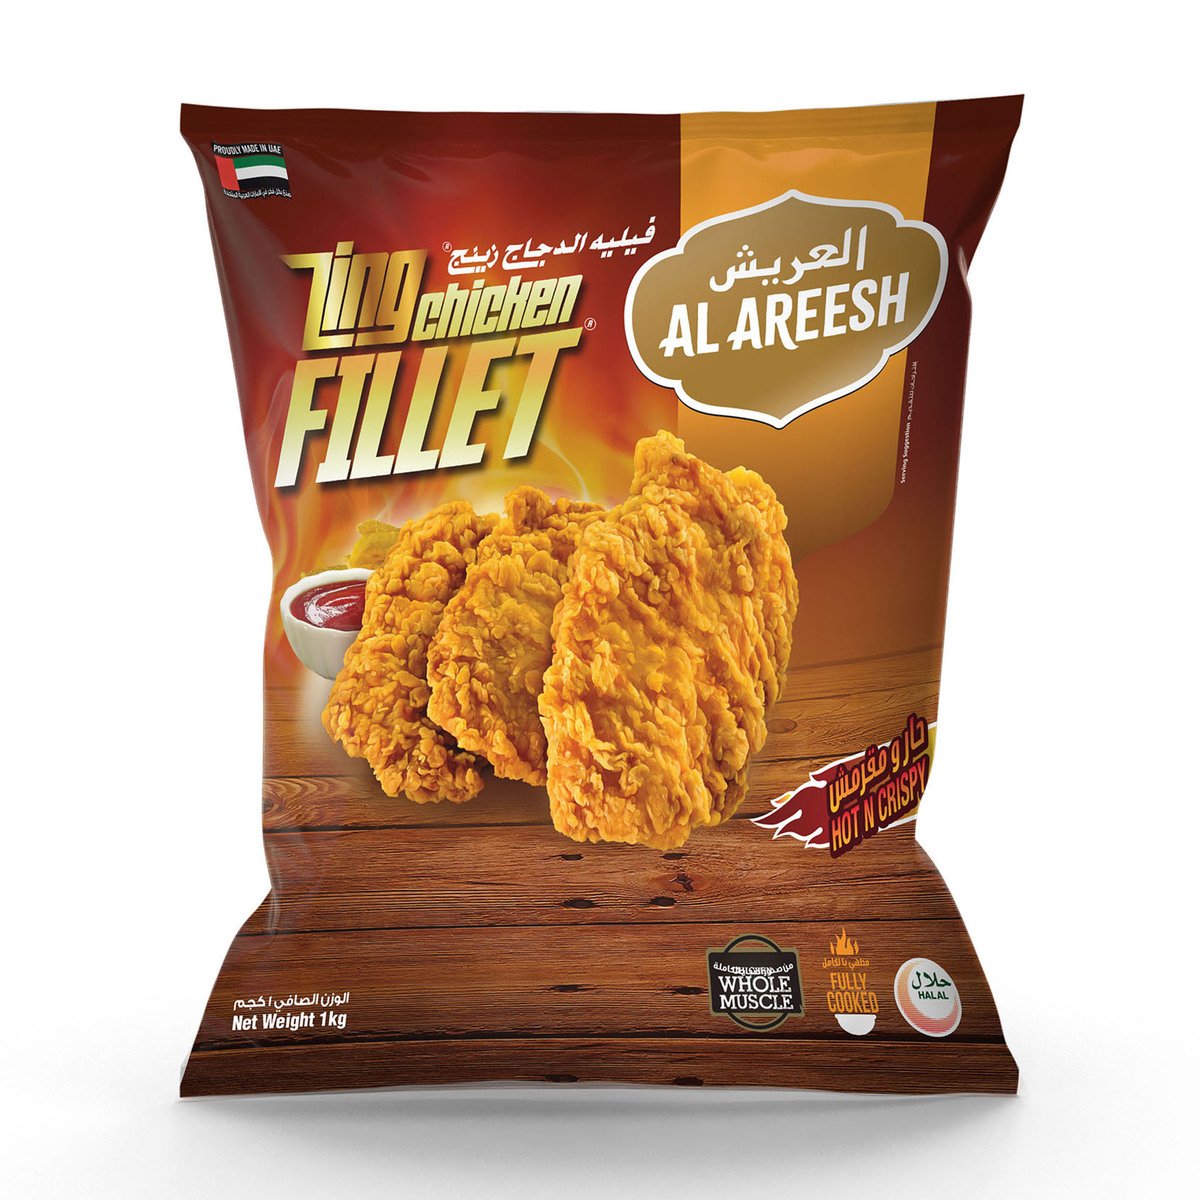 Buy Al Areesh Zing Chicken Fillet Hot & Spicy 1 kg Online at Best Price | Zingers | Lulu UAE in UAE